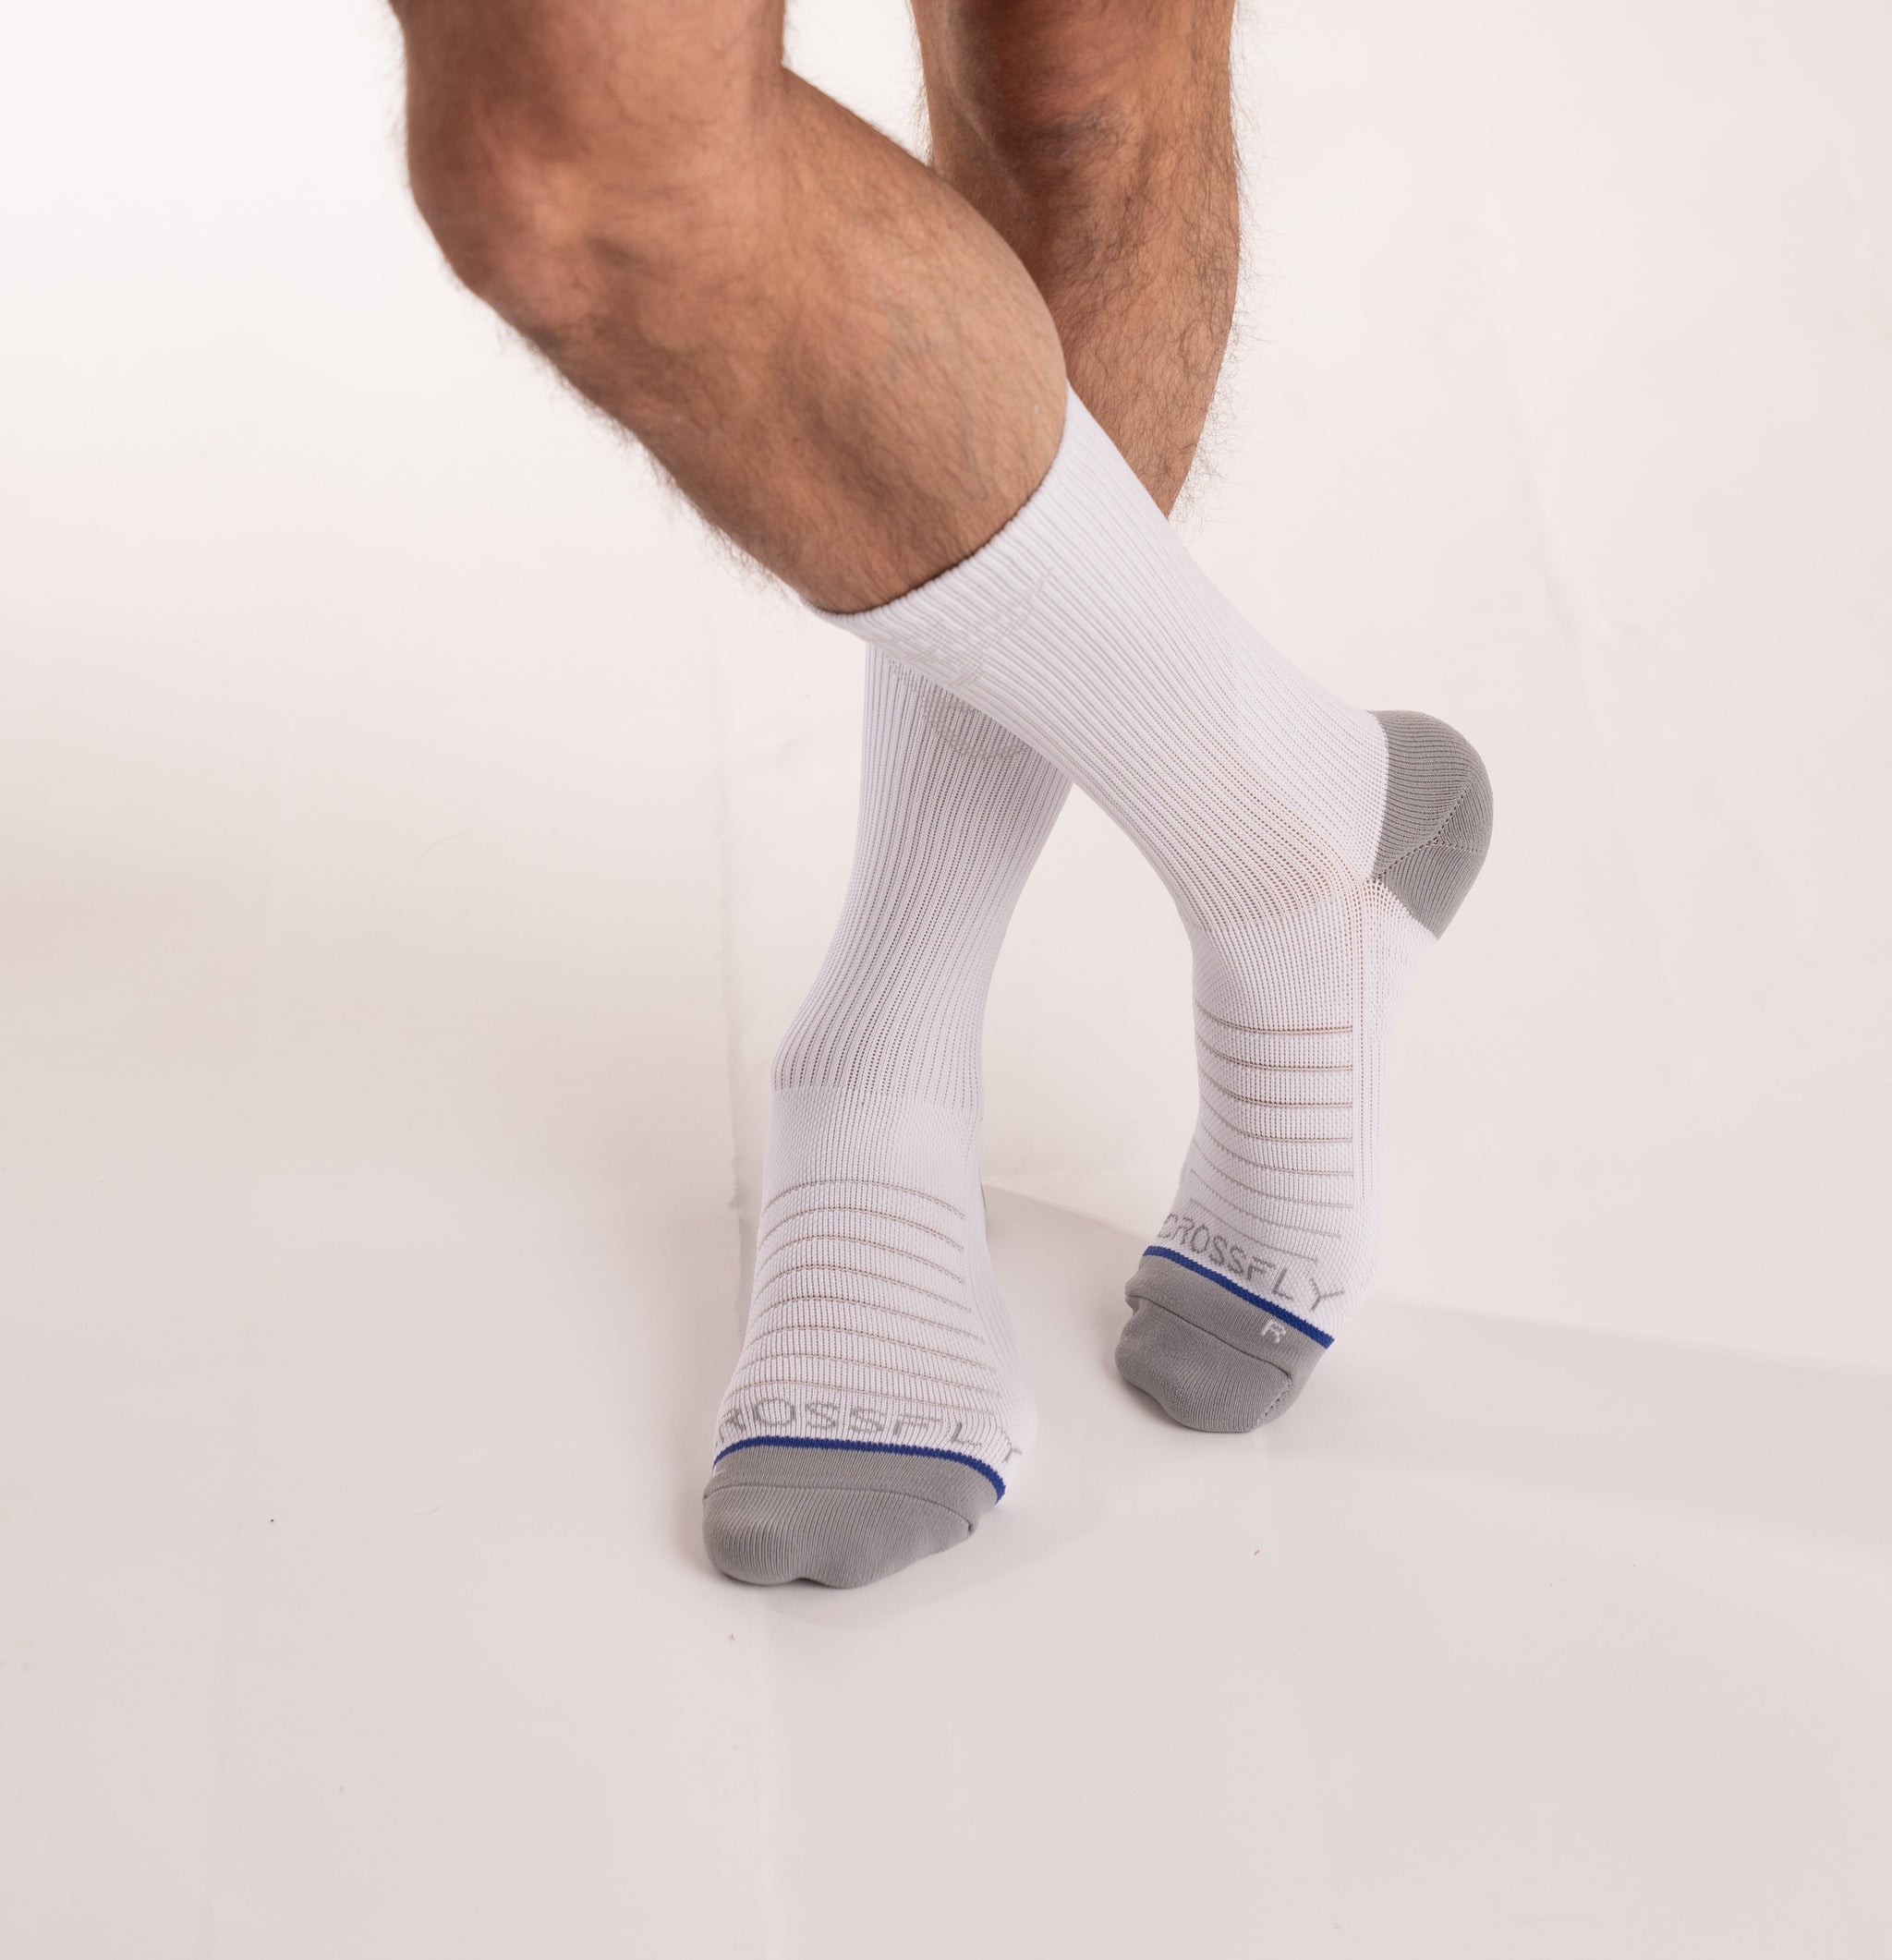 Crossfly Men's Performance Socks HERO Pro 10 Crew White - Nylon Blend